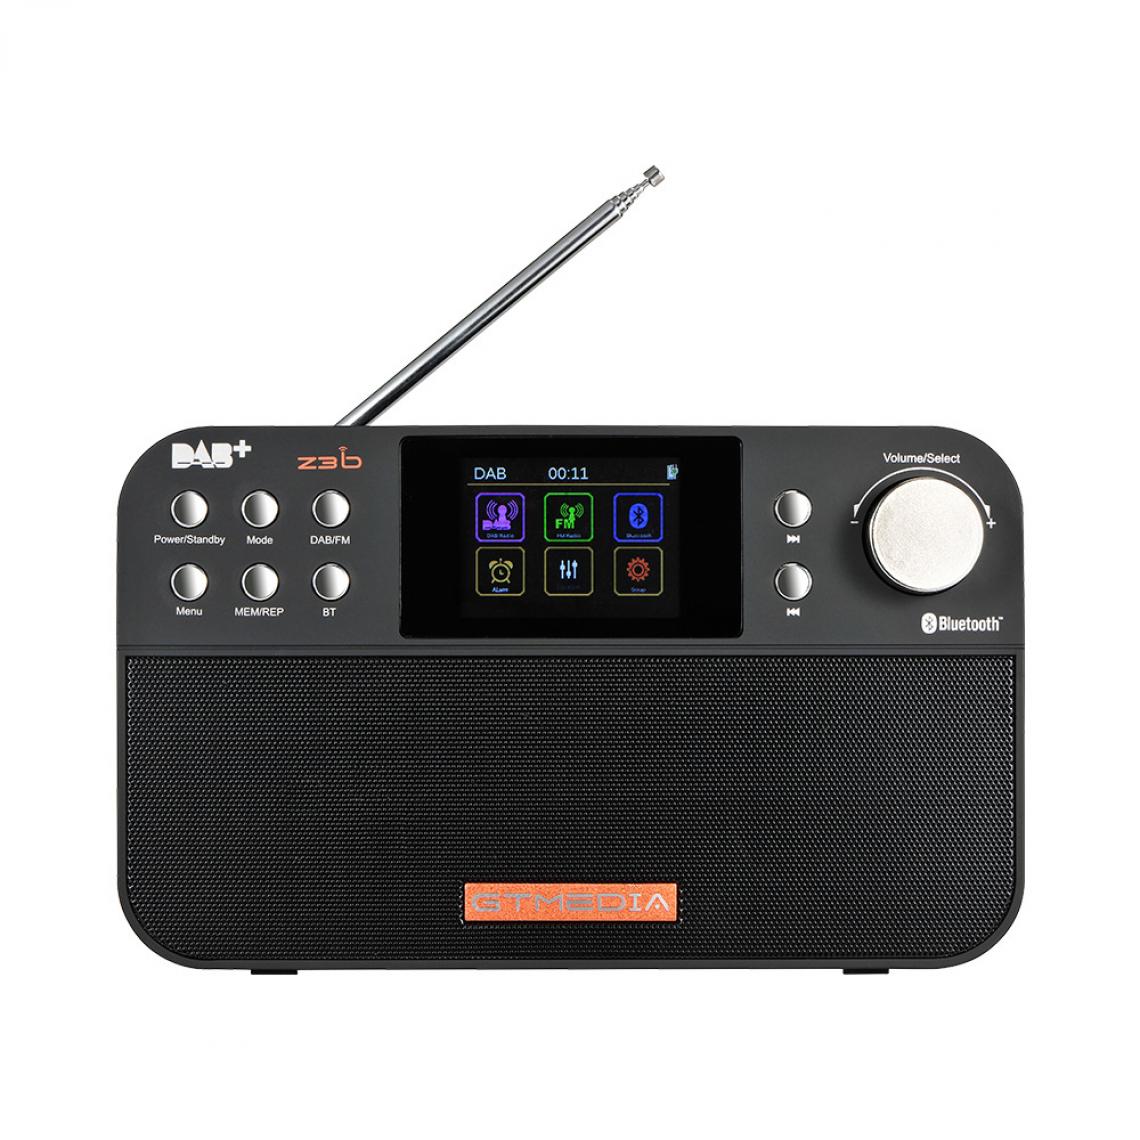 Universal - Radio portable FM DAB, haut-parleur radio multibande stéréo/RDS, avec écran à cristaux liquides, réveil, prise en charge de la carte SD TF - Radio